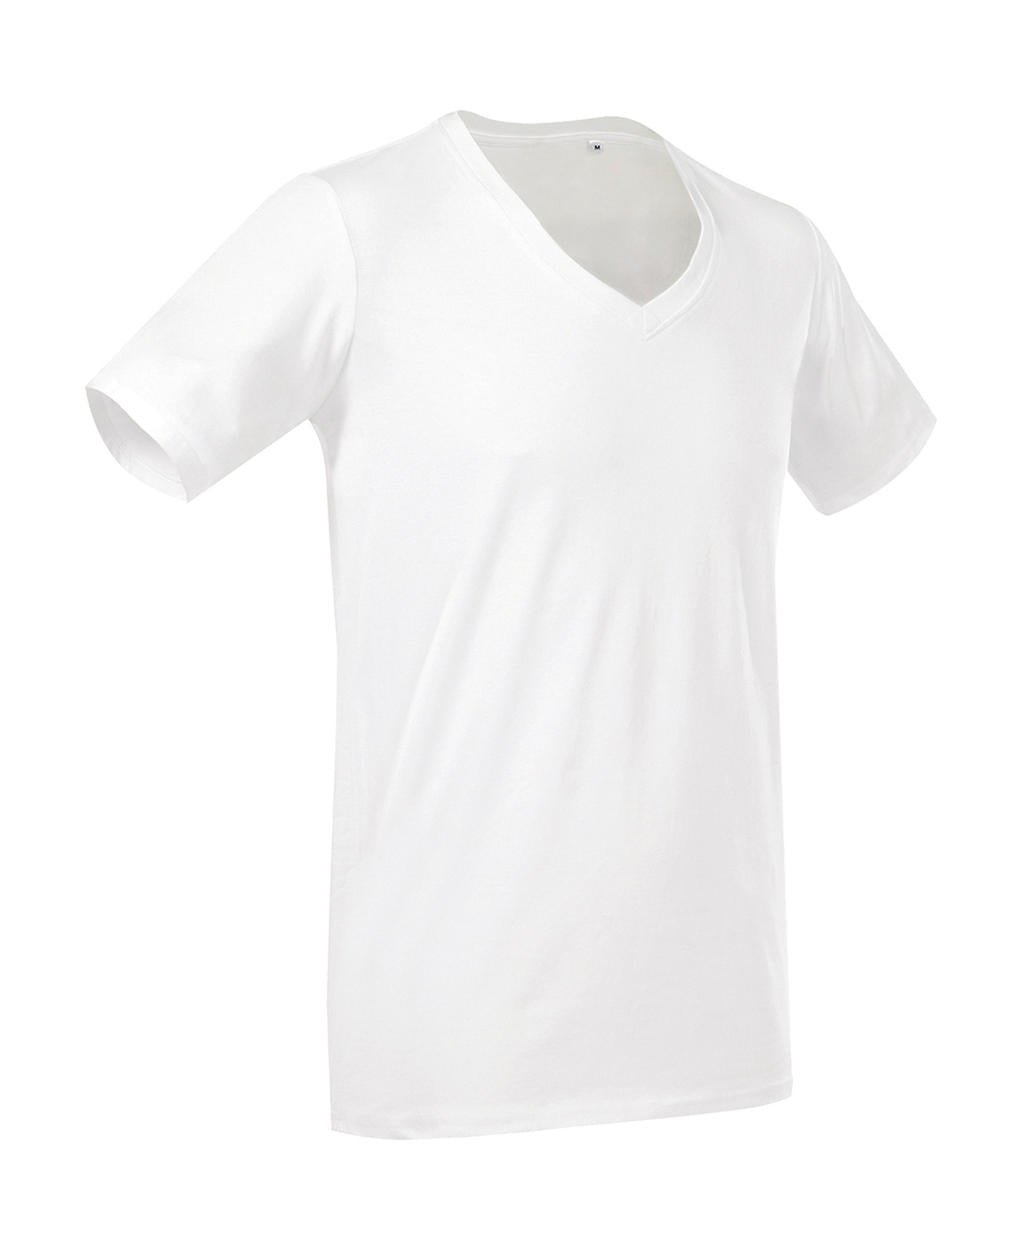 Stedman Herren T-Shirt V-Neck Shirt Basic V-Ausschnitt Basic